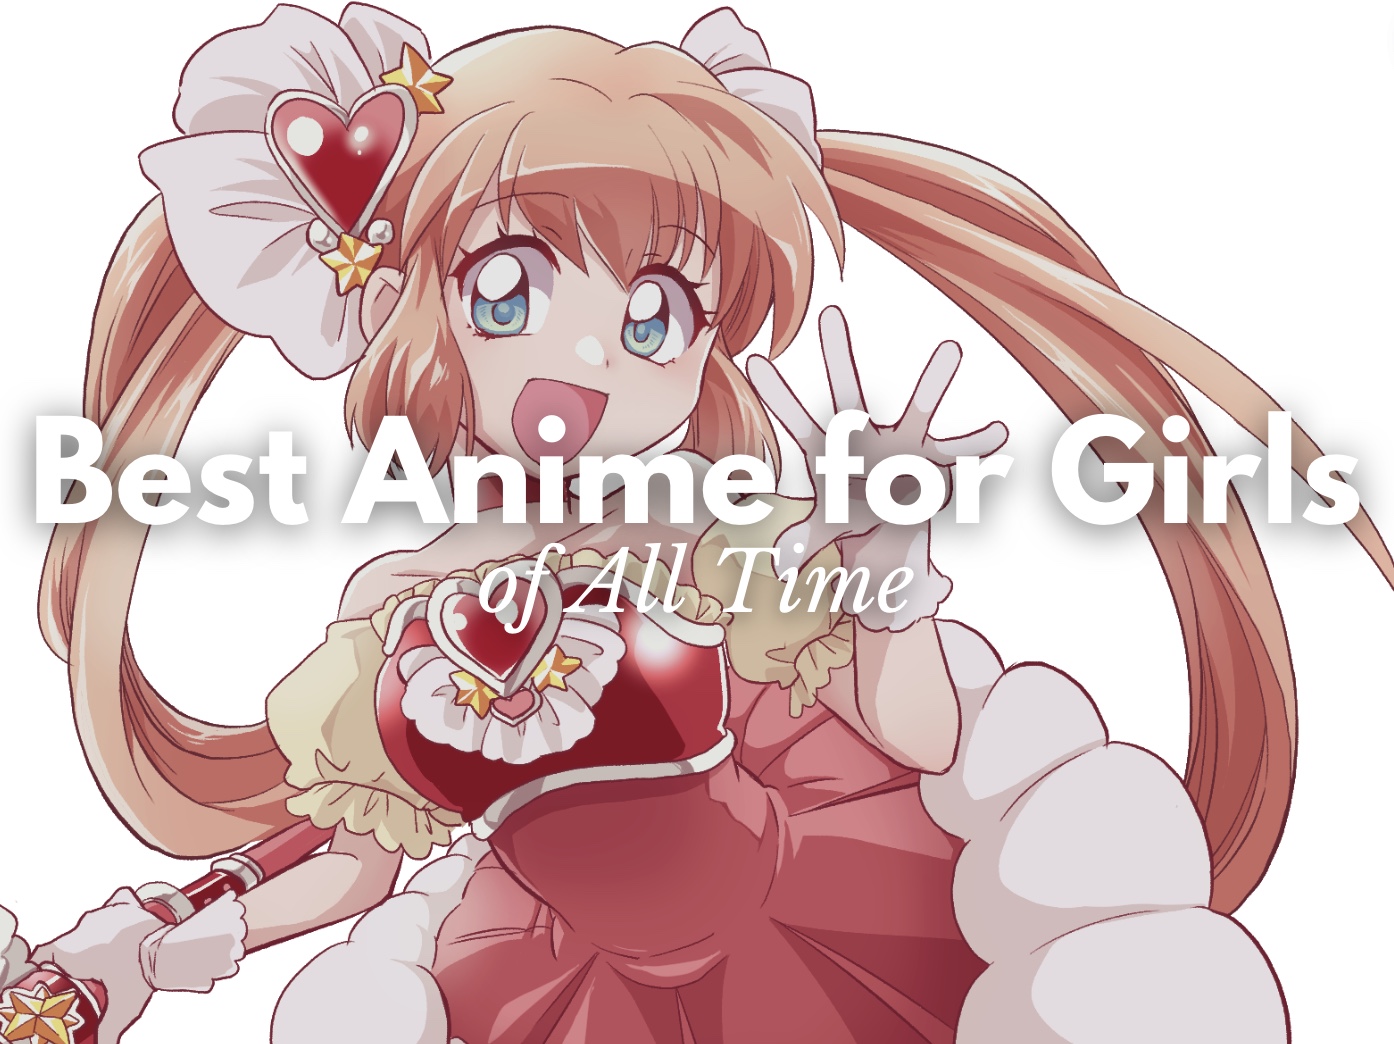 ArtStation - Female Anime Hunter Girl-demhanvico.com.vn